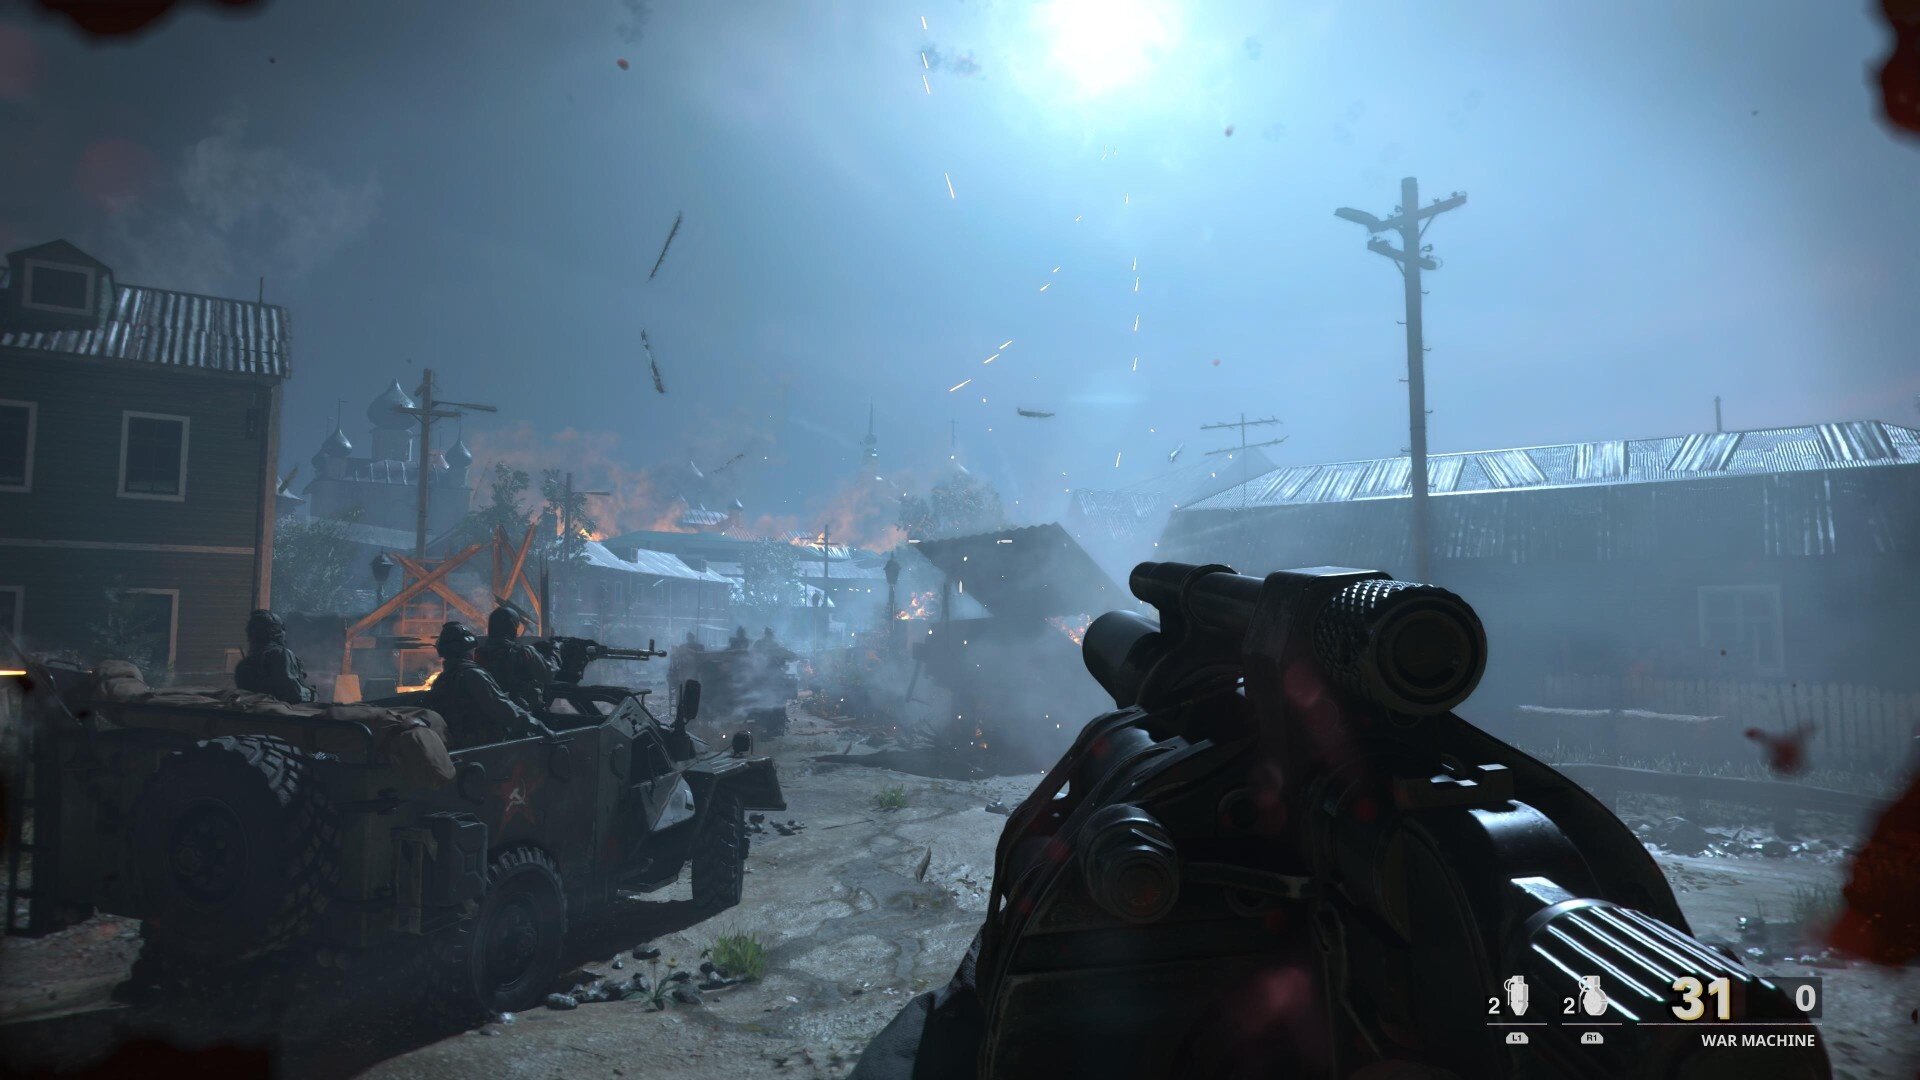 Válka je válka. Recenzujeme Call of Duty: Black Ops Cold War